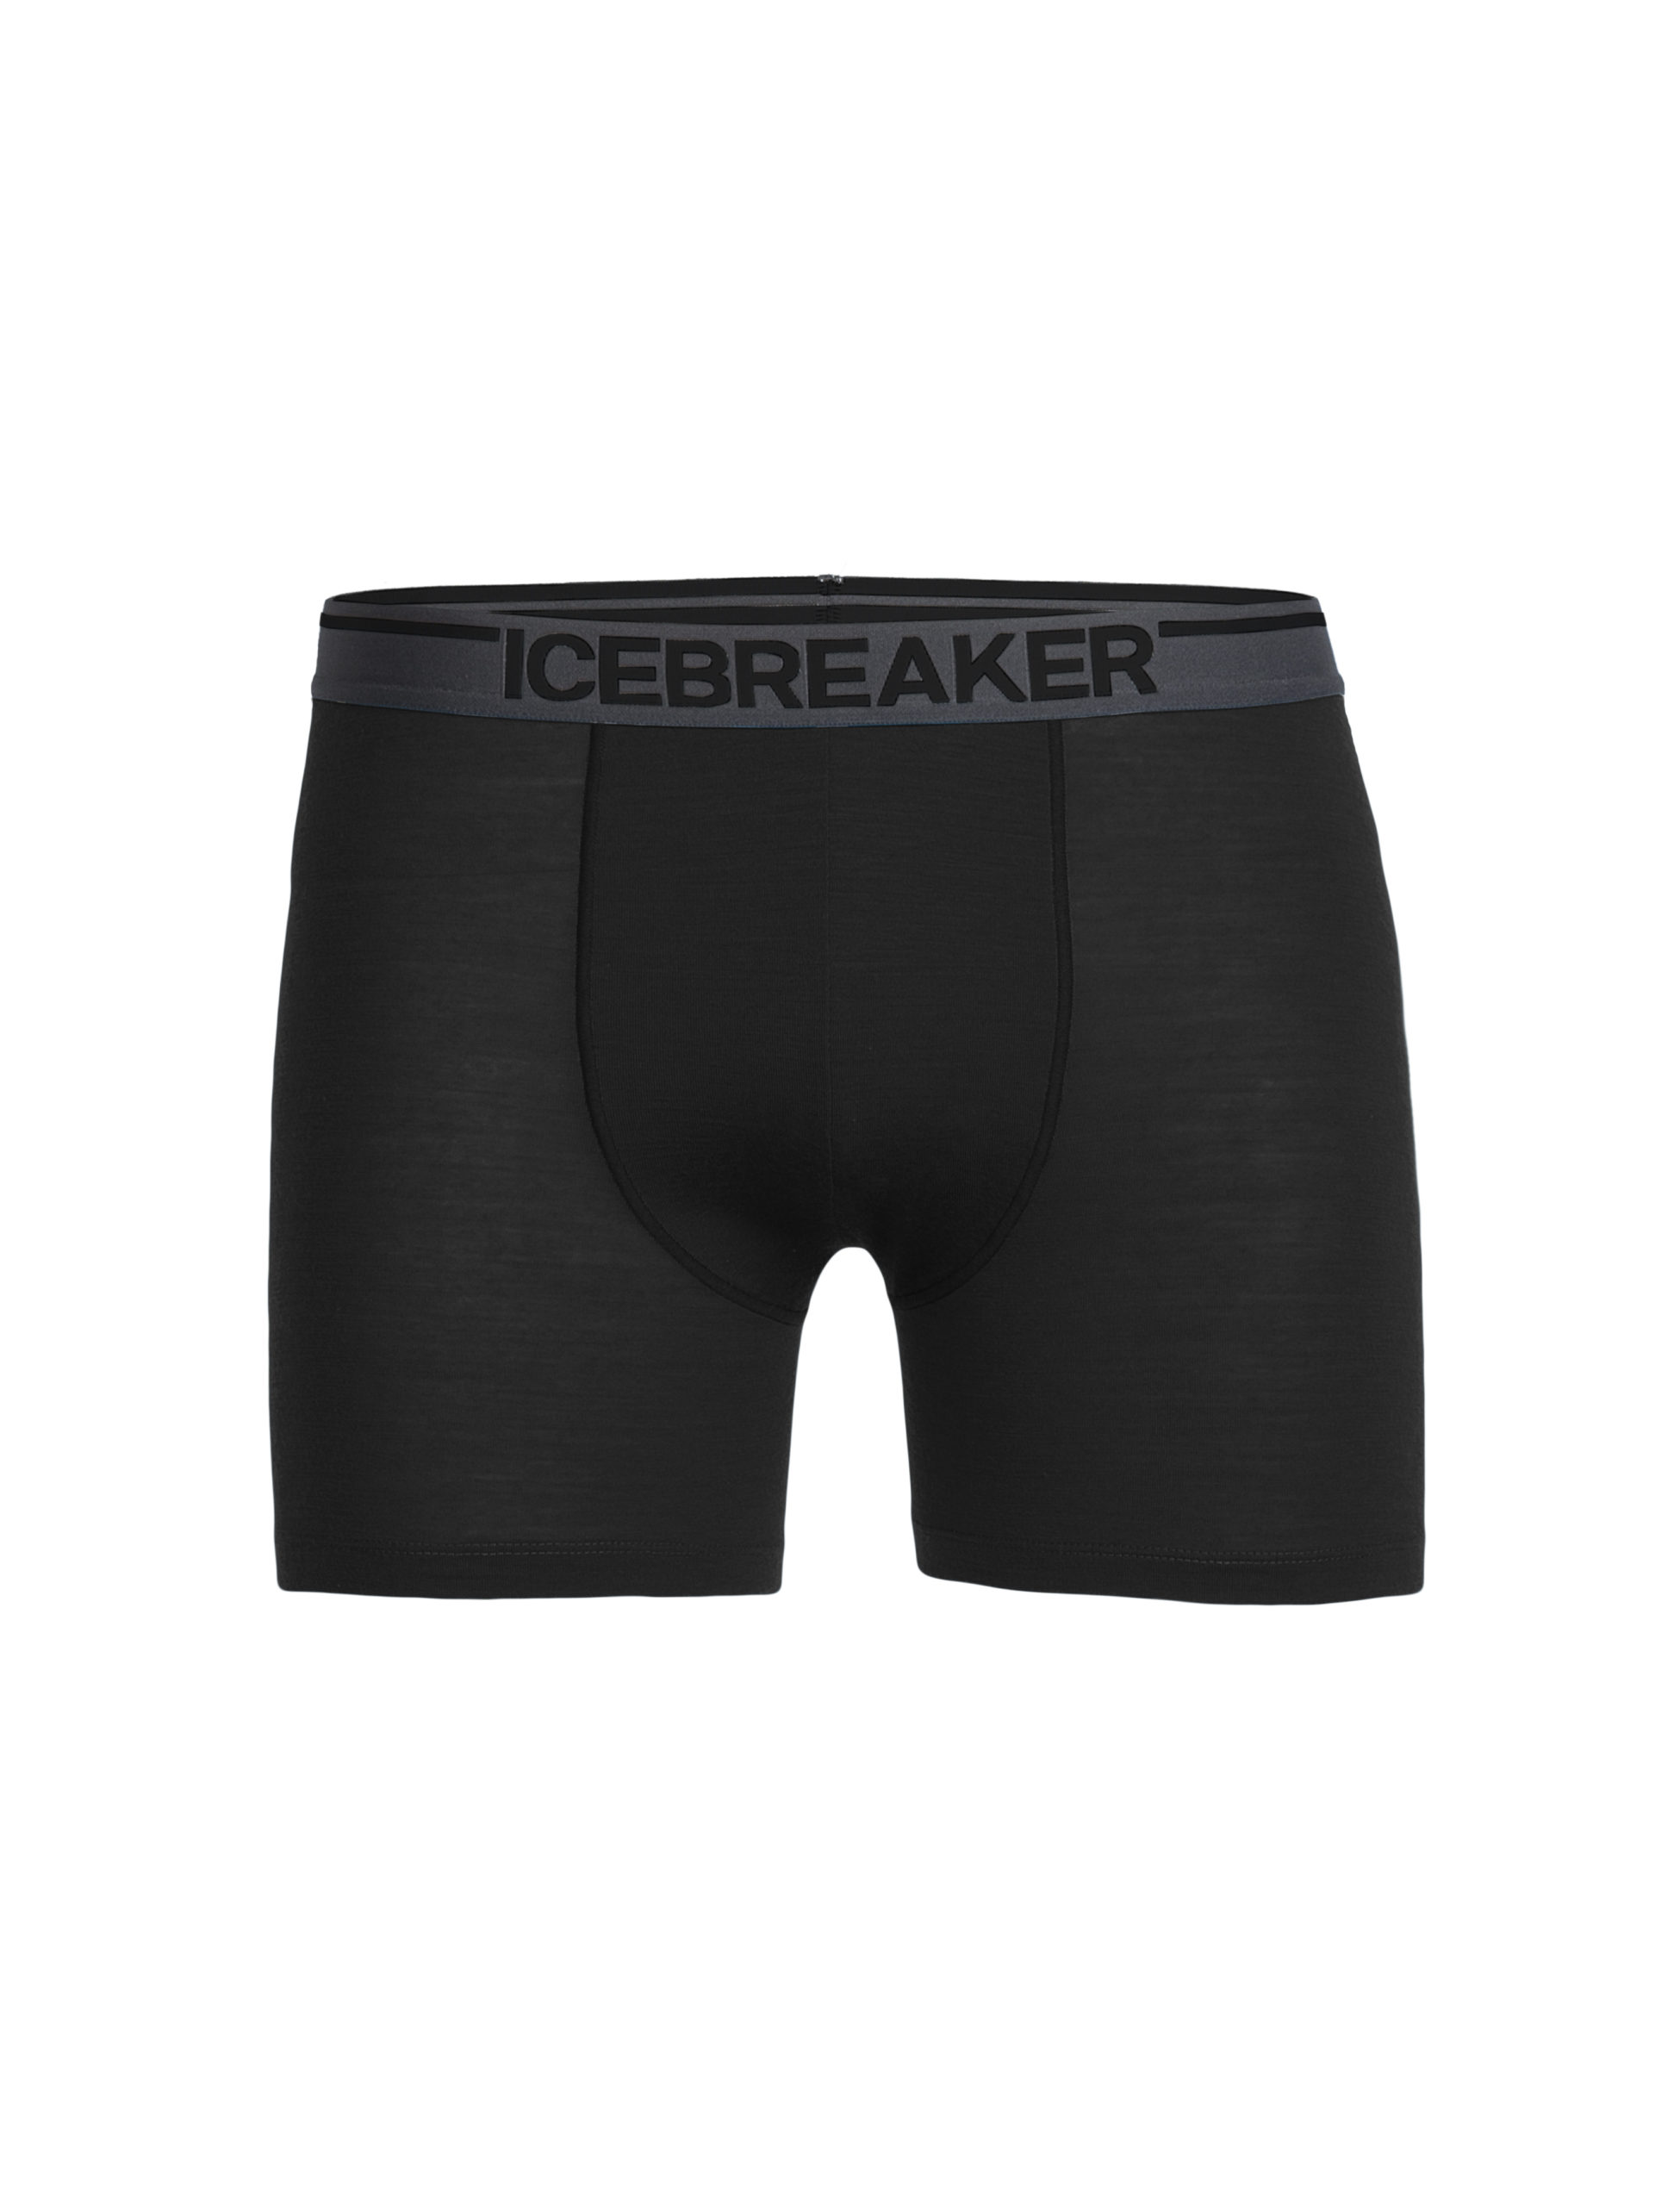 Icebreaker Mens Anatomica Boxers (herre/Black/Monsoon)-0